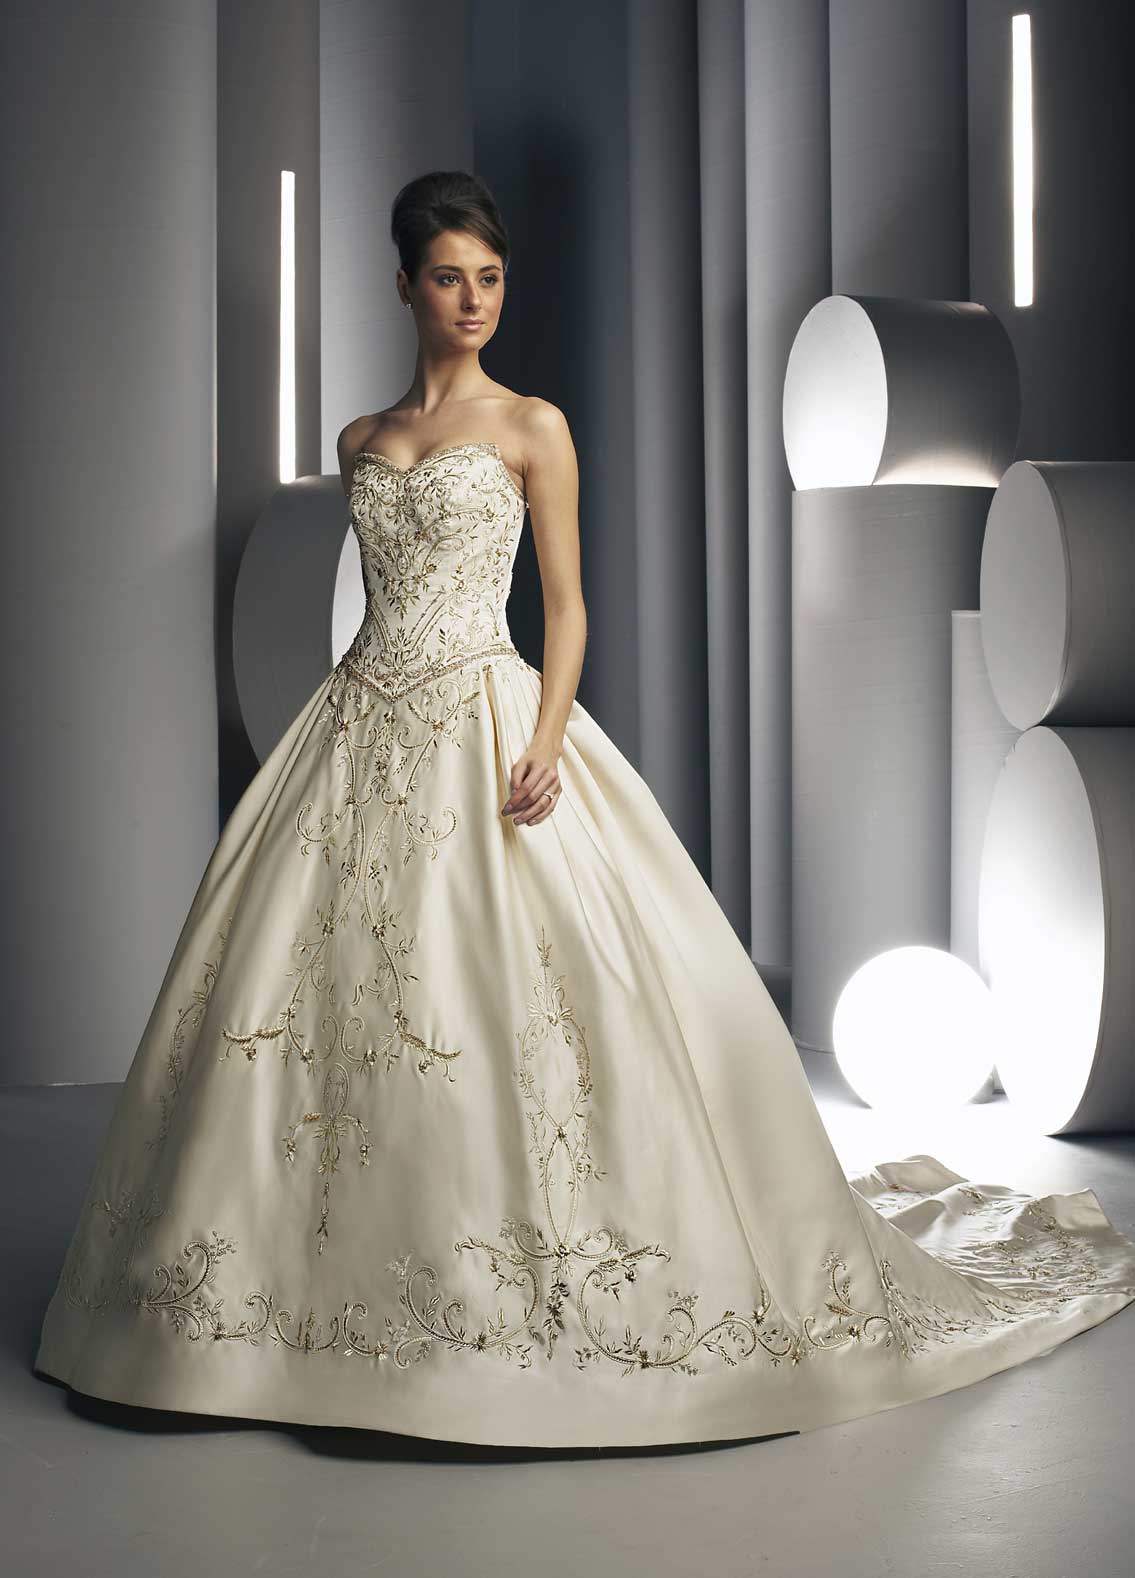 Orifashion Handmadestrapless wedding dress / gown 254